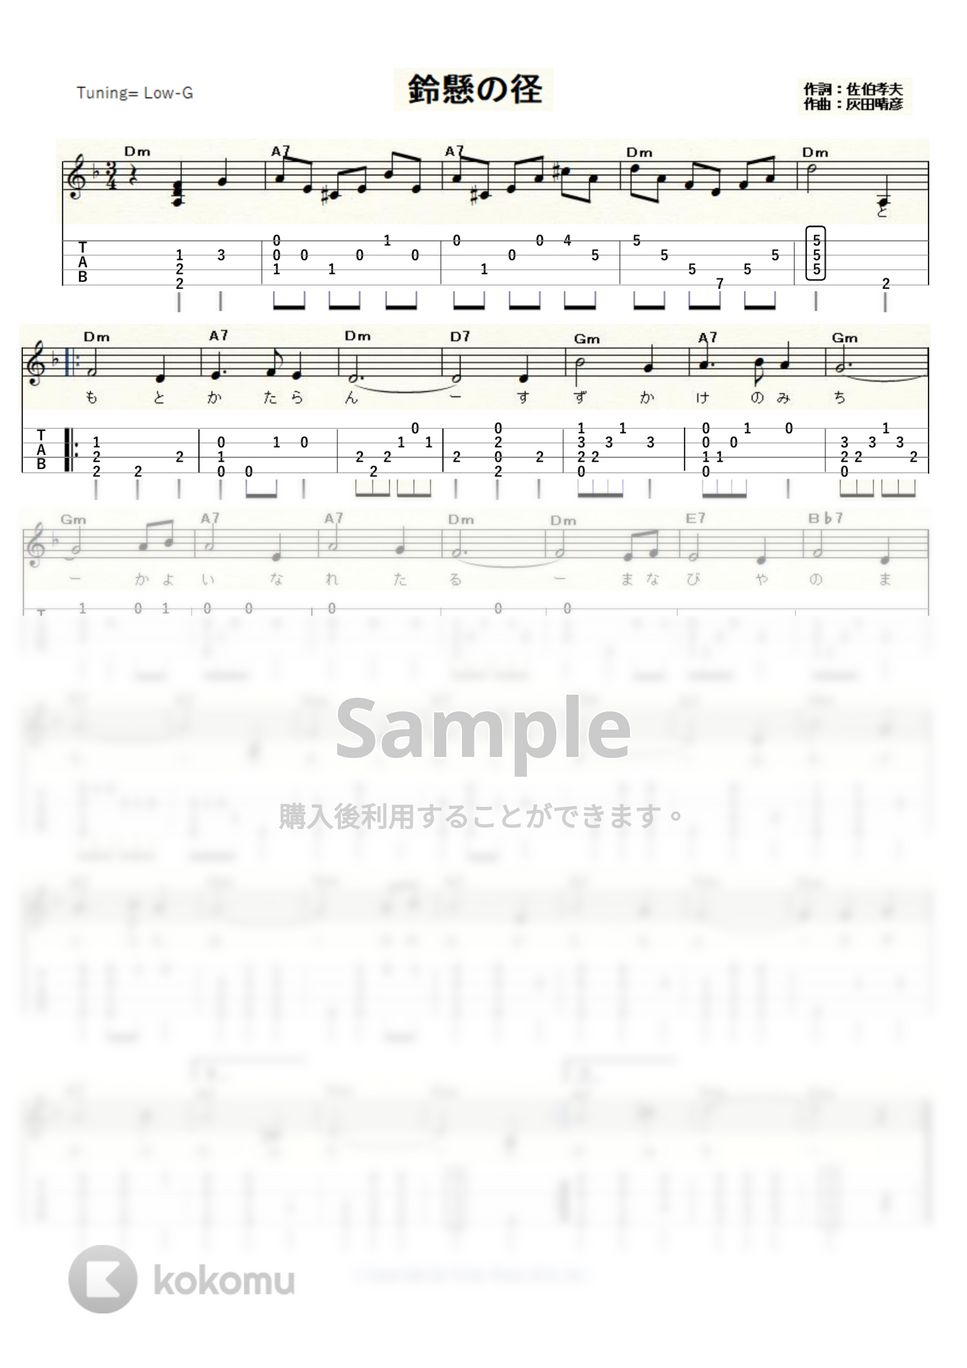 鈴懸の径 - 鈴懸の径 (ｳｸﾚﾚｿﾛ / Low-G / 初級) by ukulelepapa